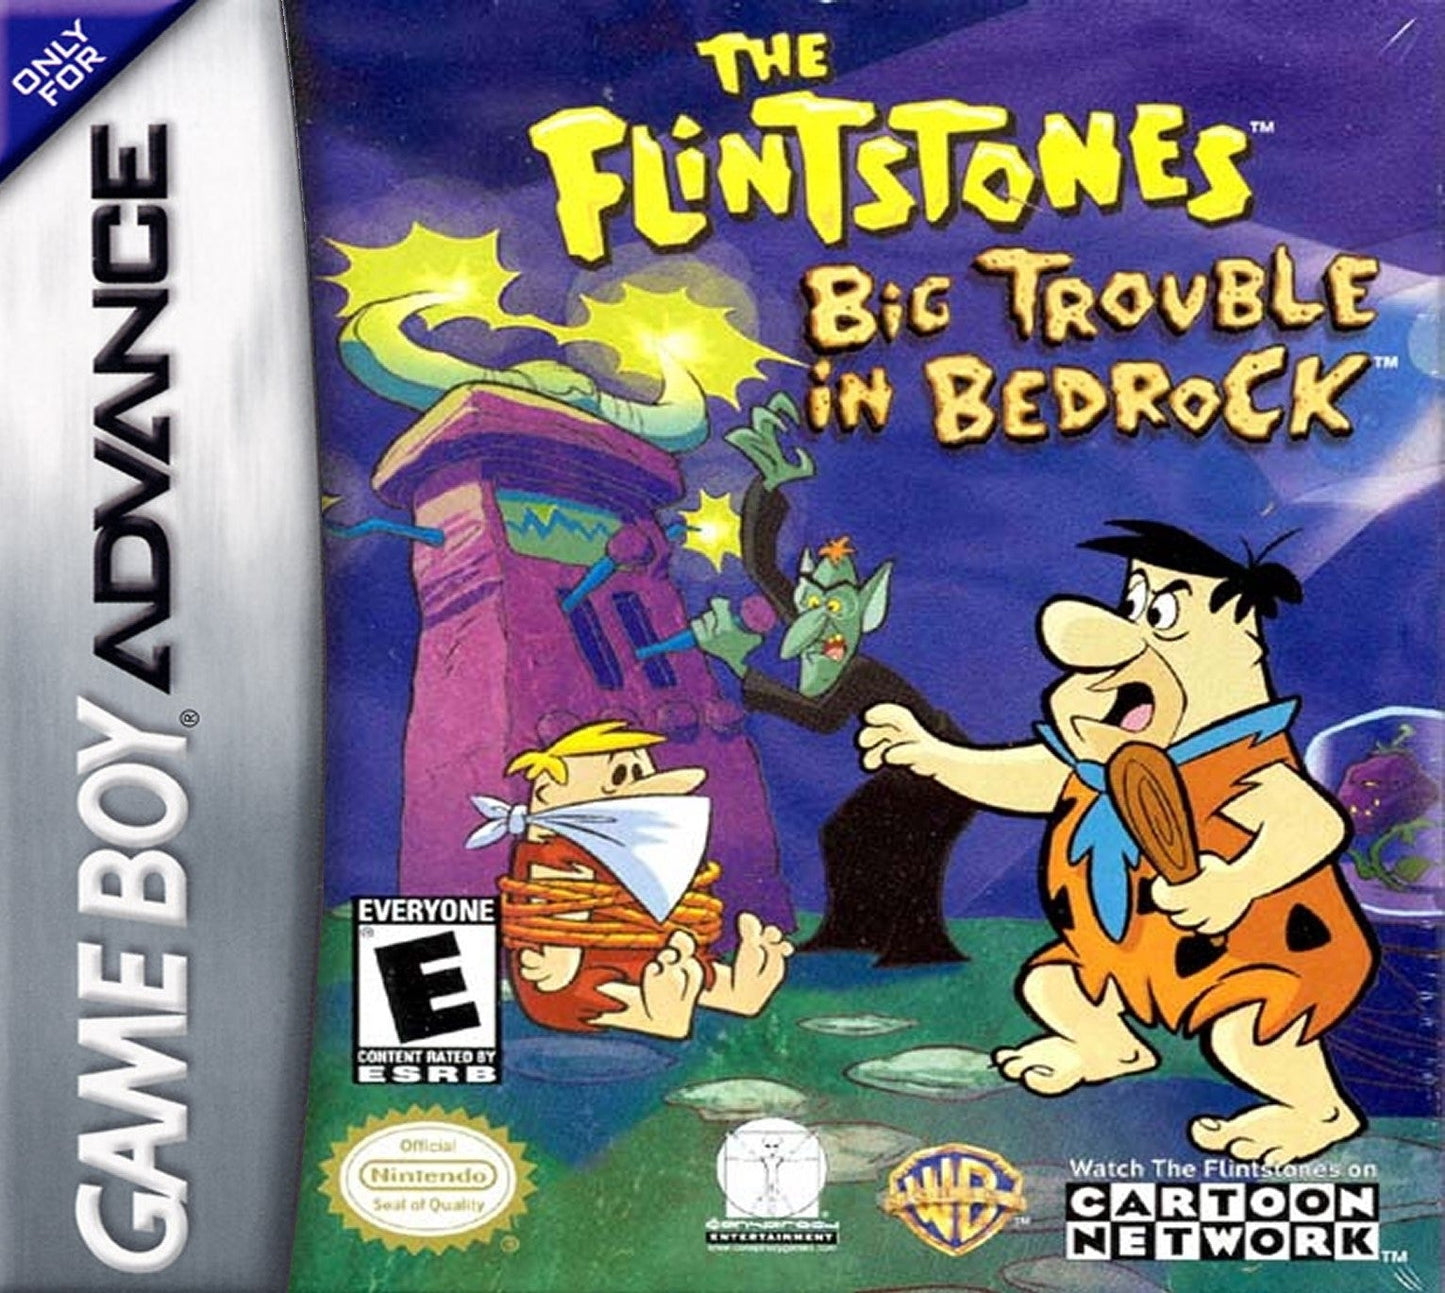 The Flintstones Big Trouble in Bedrock